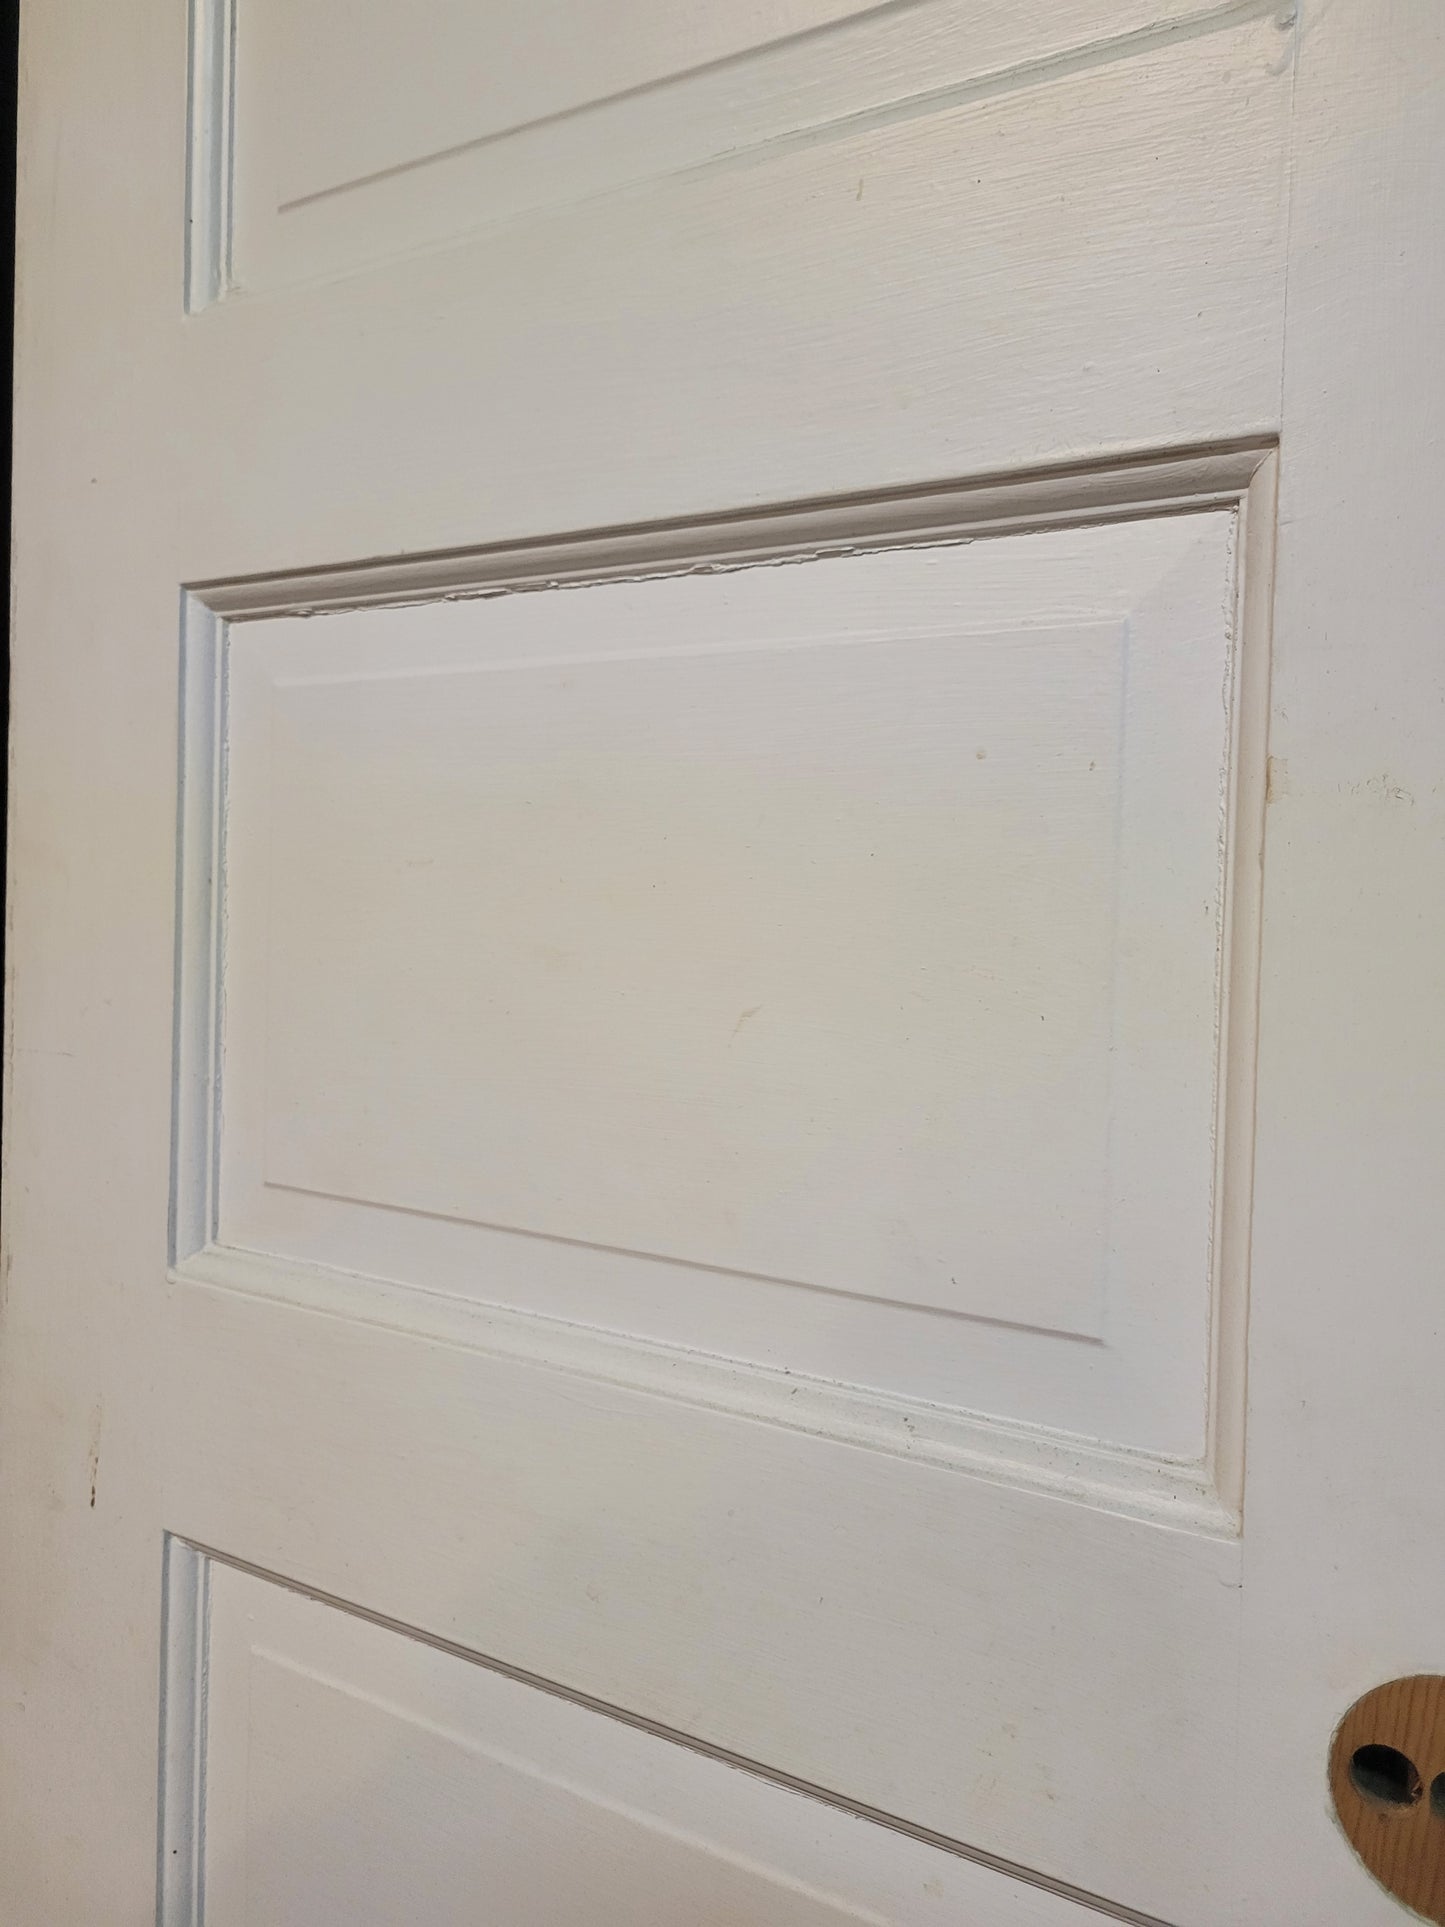 Pair of 24" Wide Antique White Five Panel Doors, Narrow Set of Solid Wood Double Doors #3